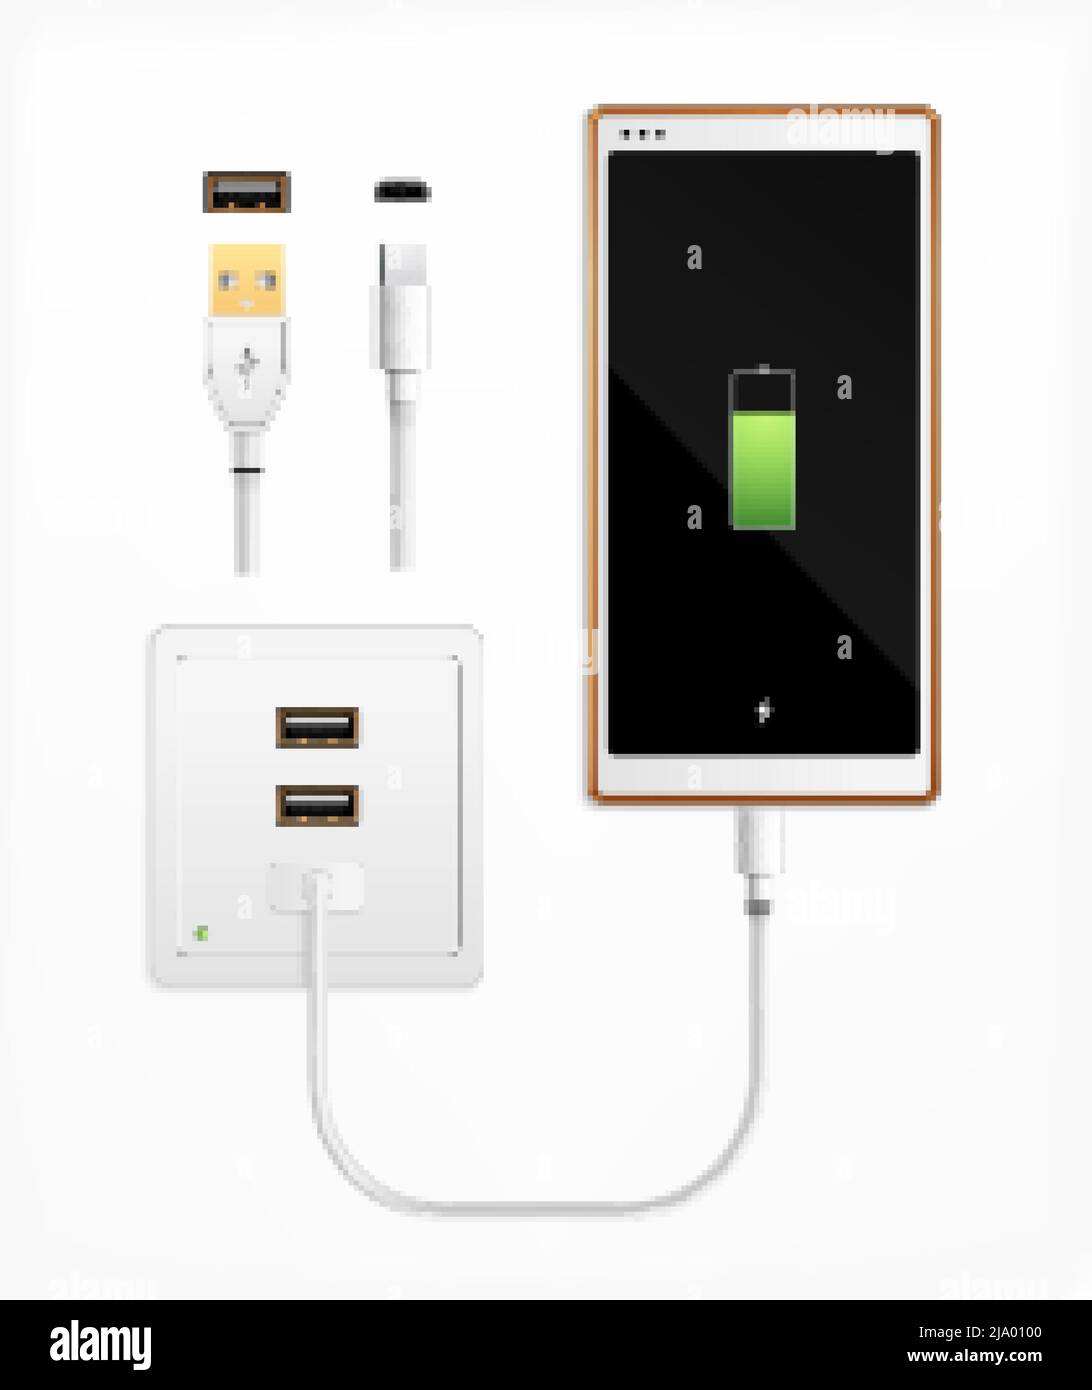 Usbport plug in Charge composizione realistica con set di connettori per cavo isolati, porte, presa e illustrazione vettoriale per smartphone Illustrazione Vettoriale